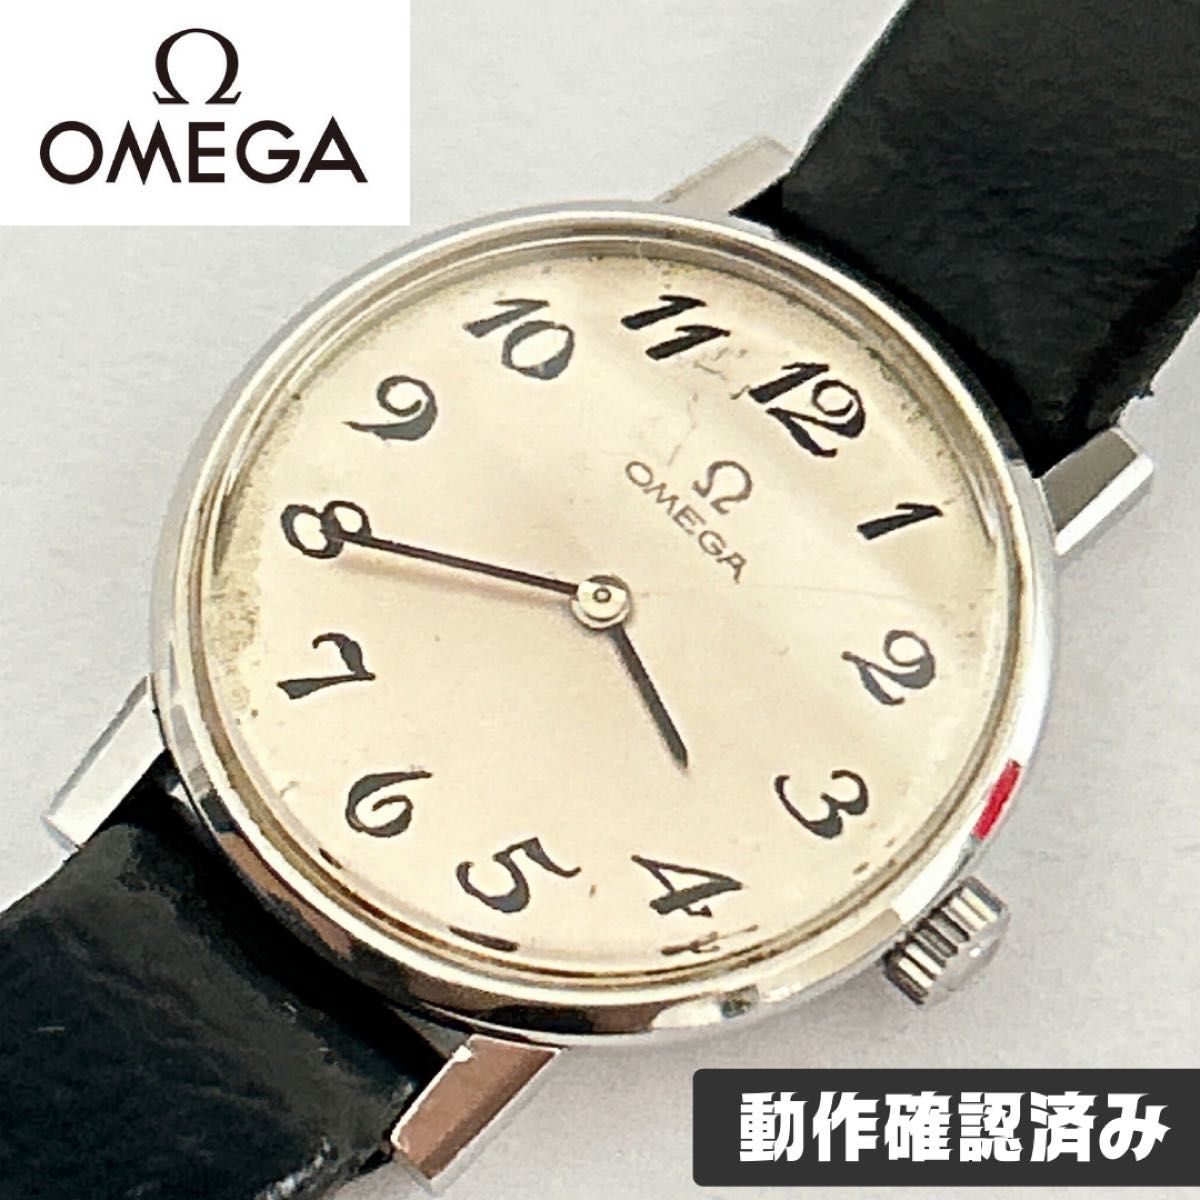 【本日限定】オメガ オートマティック OMEGA automatic 腕時計 限定 希少